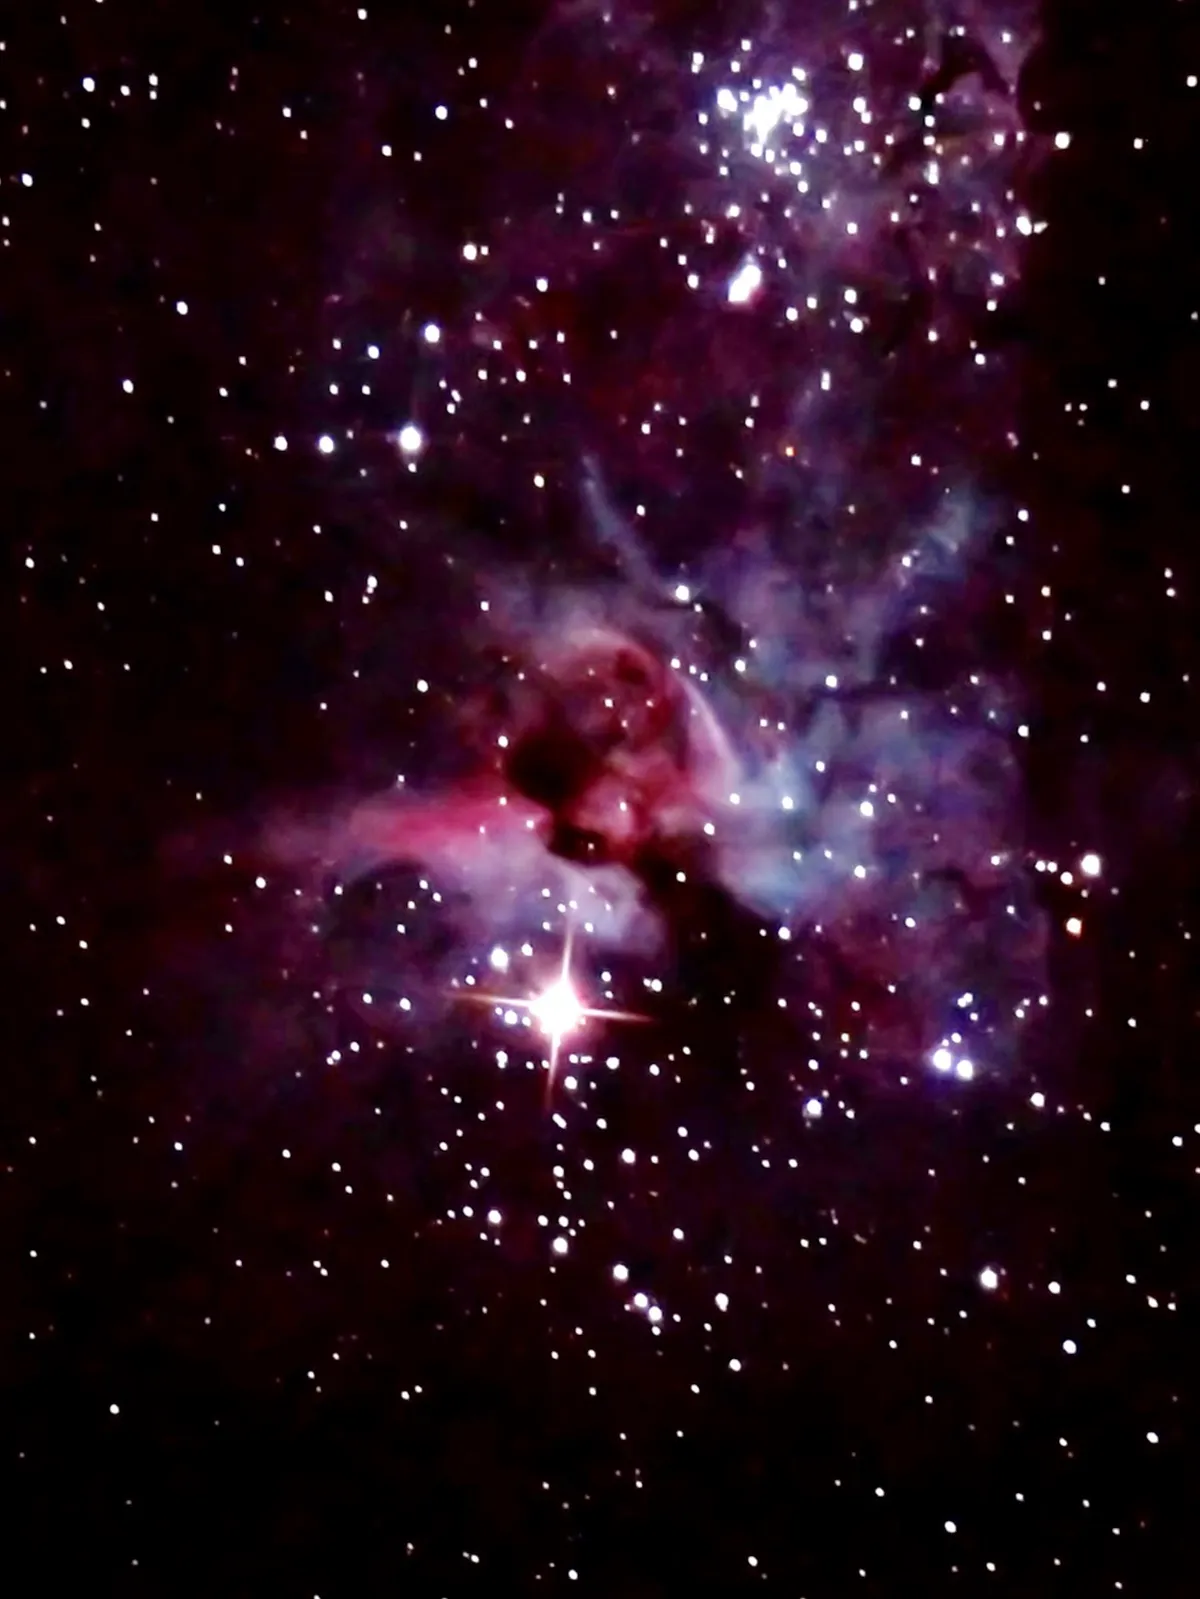 The Carina Nebula by Ronald Piacenti Junior, Brasilia, DF, Brazil.